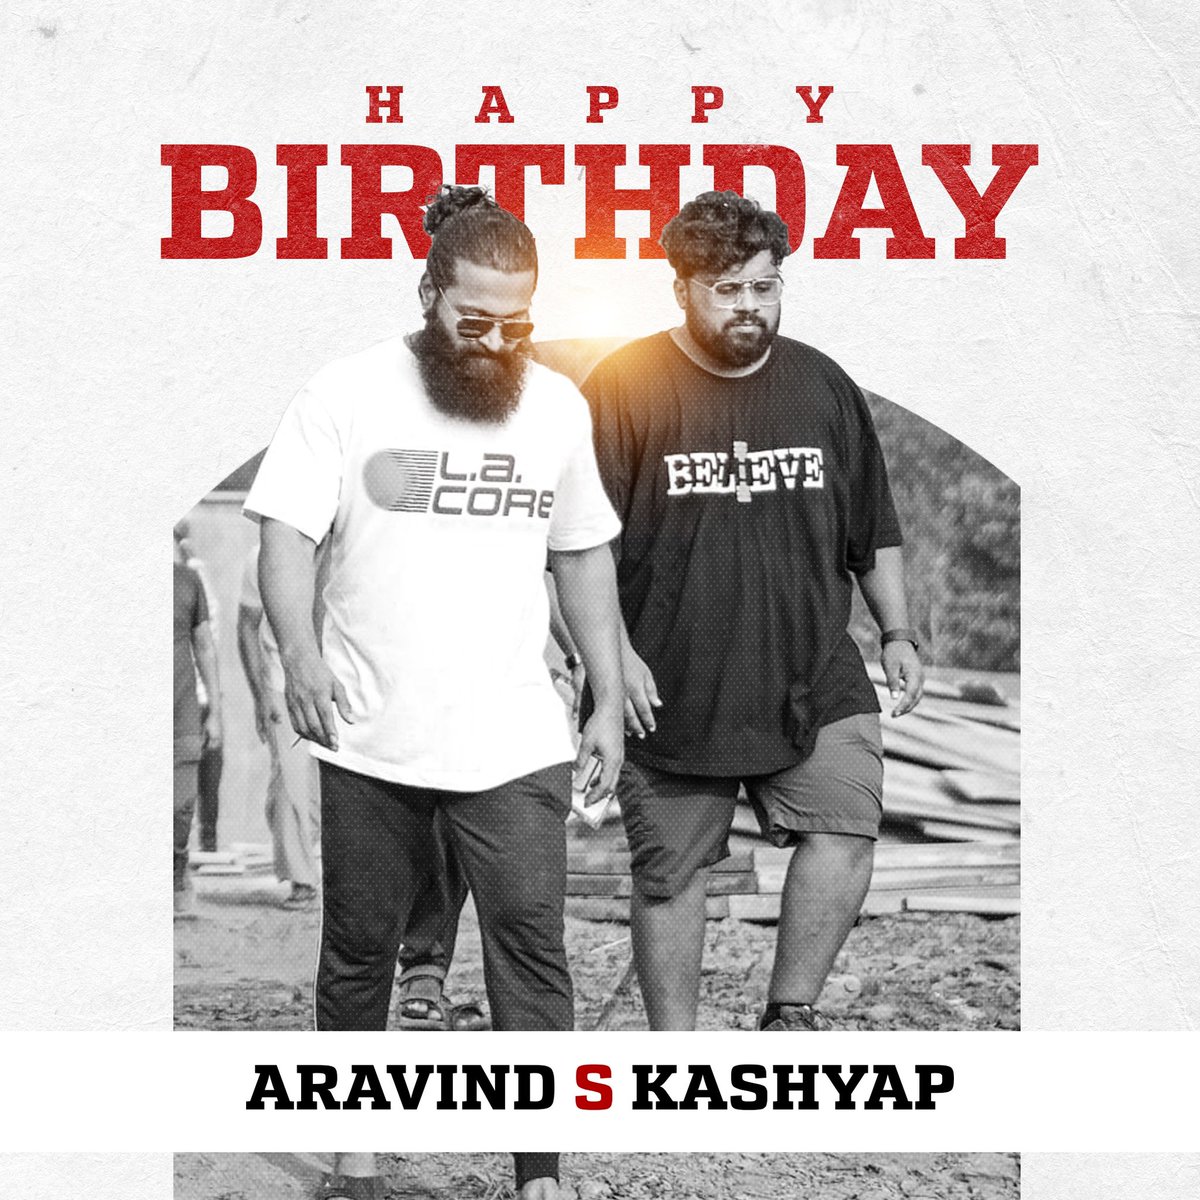 ನಿನ್ನ ಜೀವನ ಕಾಂತಿಯಿಂದ ಹೊಳೆಯಲಿ, ಸಂತೋಷ ಮತ್ತು ಯಶಸ್ಸು ನಿನ್ನ ಪಾಲಿಗೆ ಸದಾ ಹರಿಯಲಿ. ಹುಟ್ಟುಹಬ್ಬದ ಶುಭಾಶಯಗಳು! Happy Birthday dear brother #AravindKashyap 🎉 #HappyBirthday